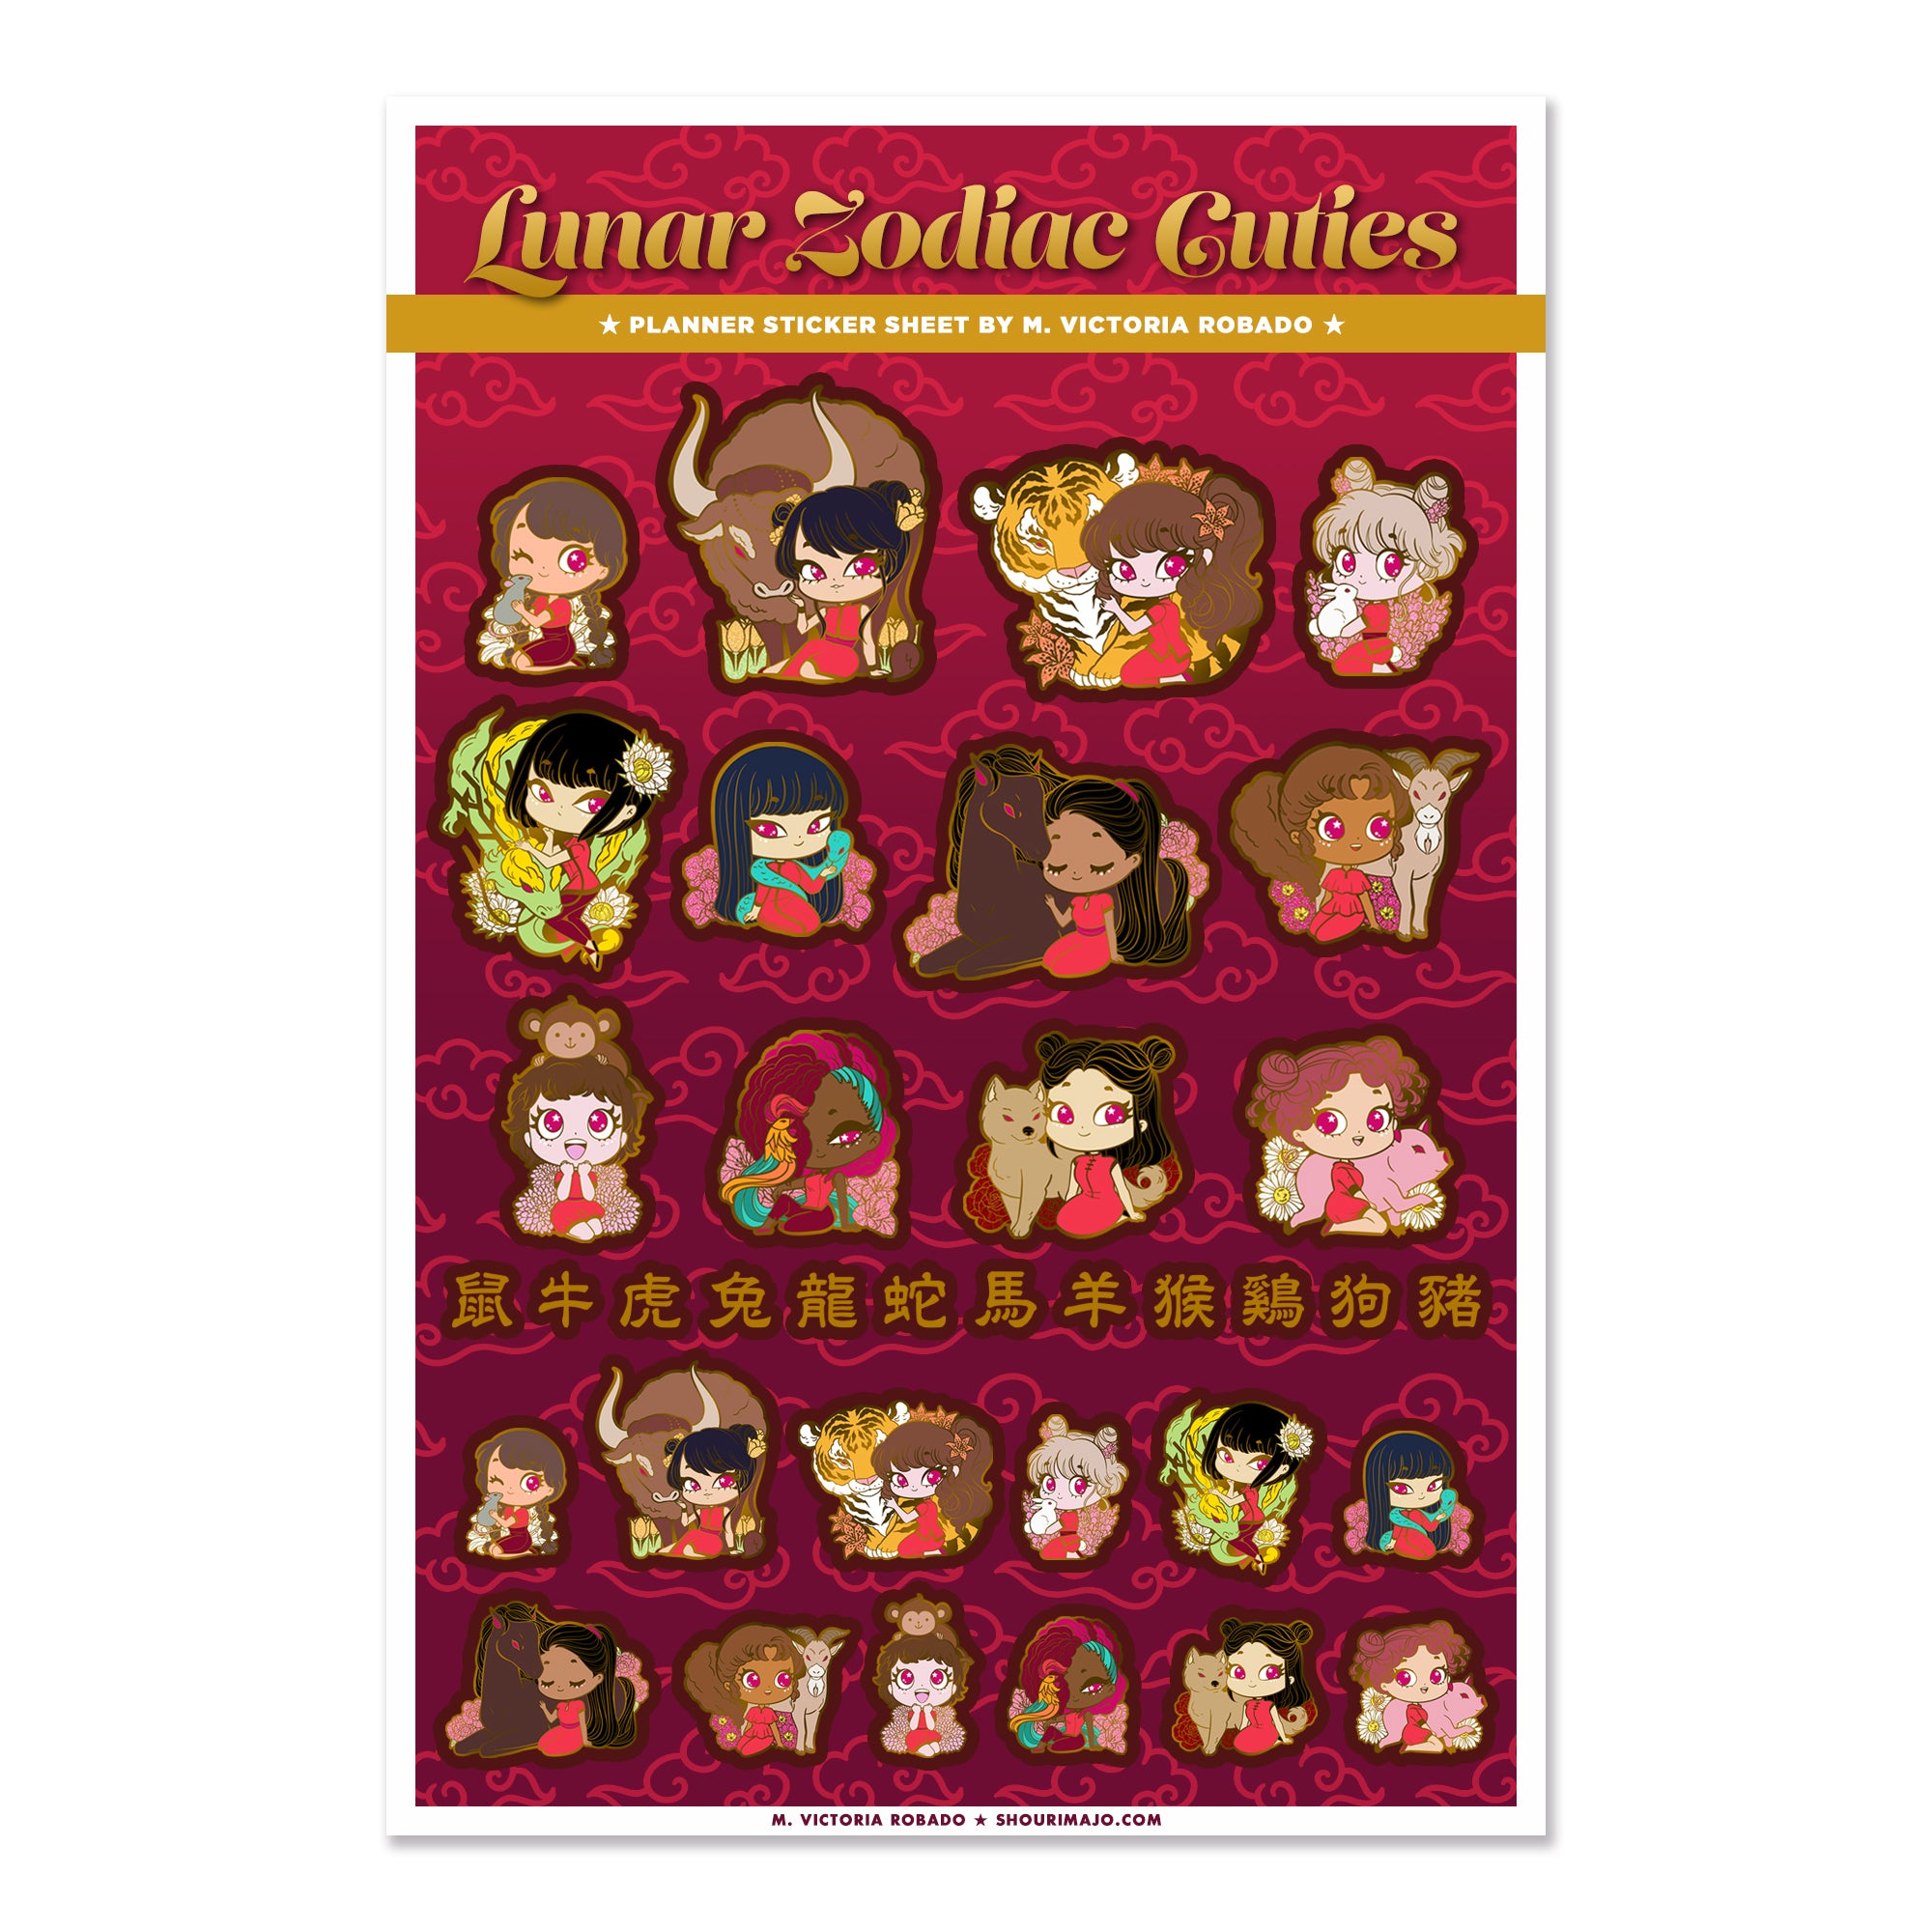 Lunar Zodiac Cuties Planner Sticker Sheet